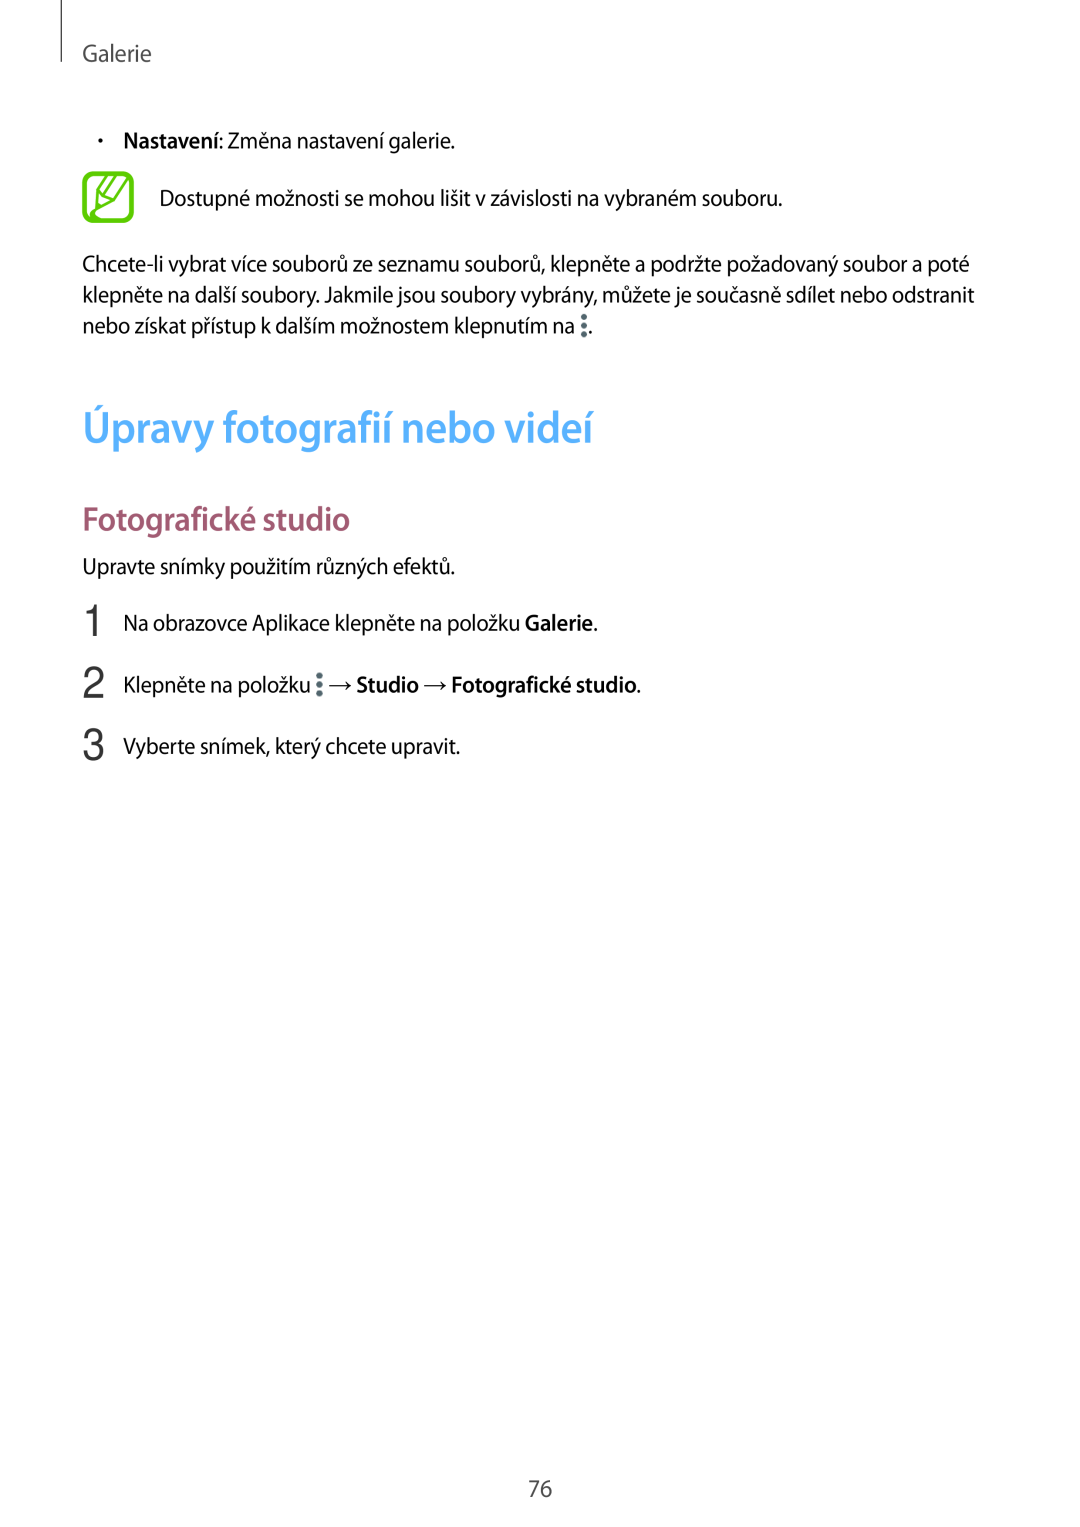 Samsung SM-T700NTSAXEH manual Úpravy fotografií nebo videí, Klepněte na položku →Studio →Fotografické studio, Galerie 